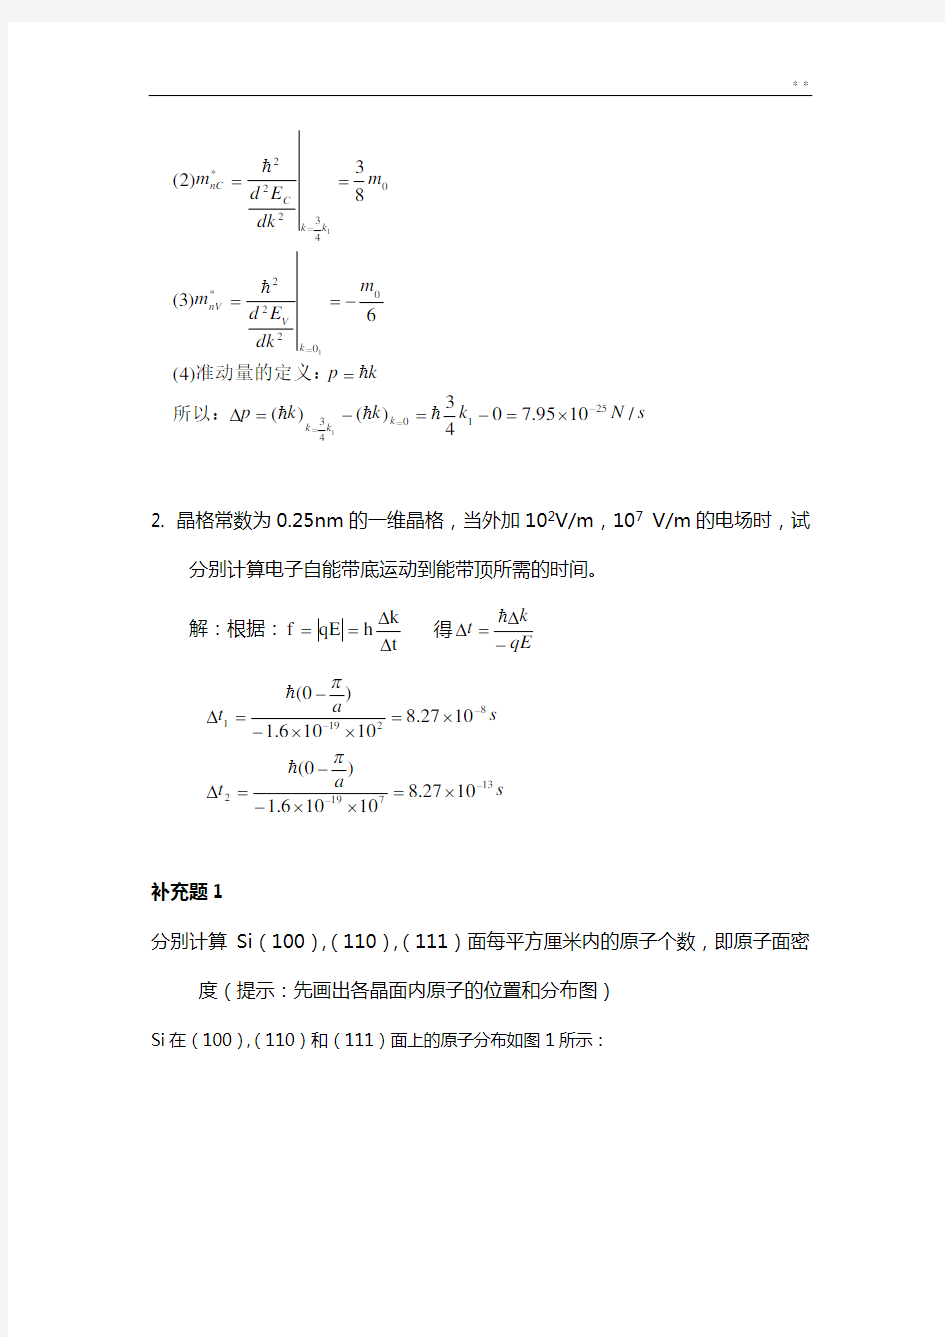 半导体物理学(刘恩科)第七版第一章到第七章完全课后题目解析